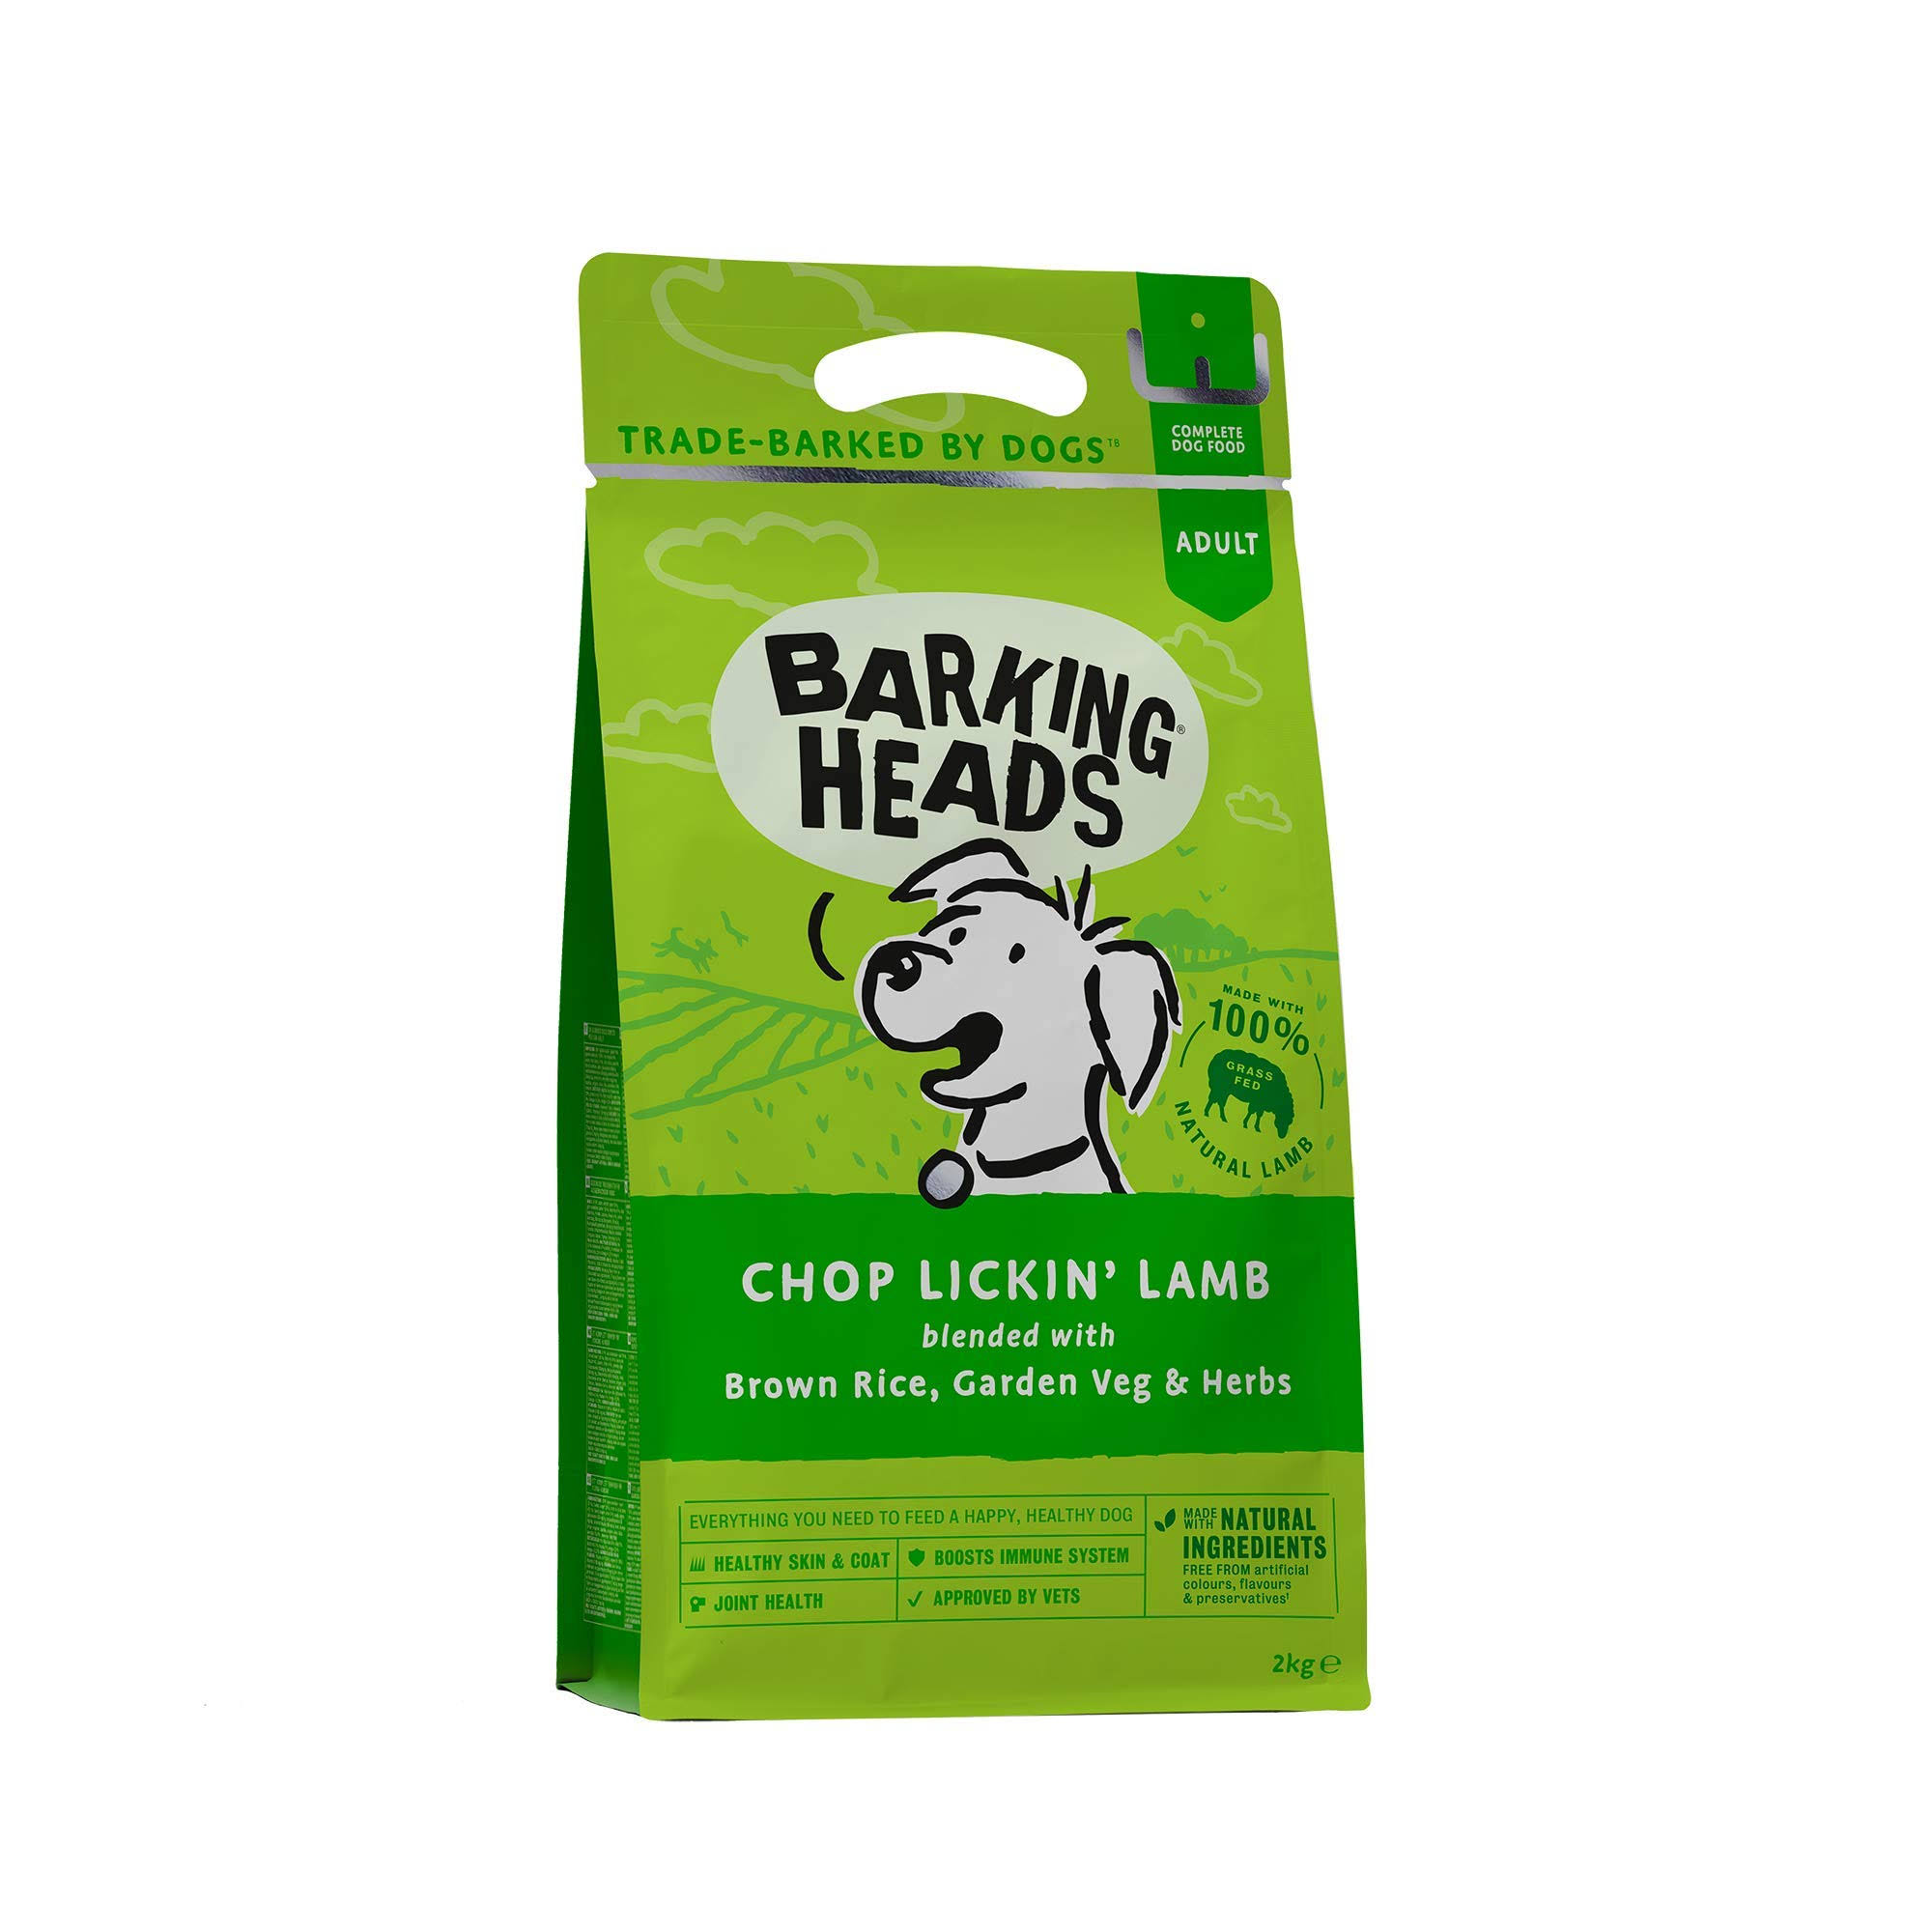 Barking Heads Bad Hair Day Natural Adult Dog Food - Lamb